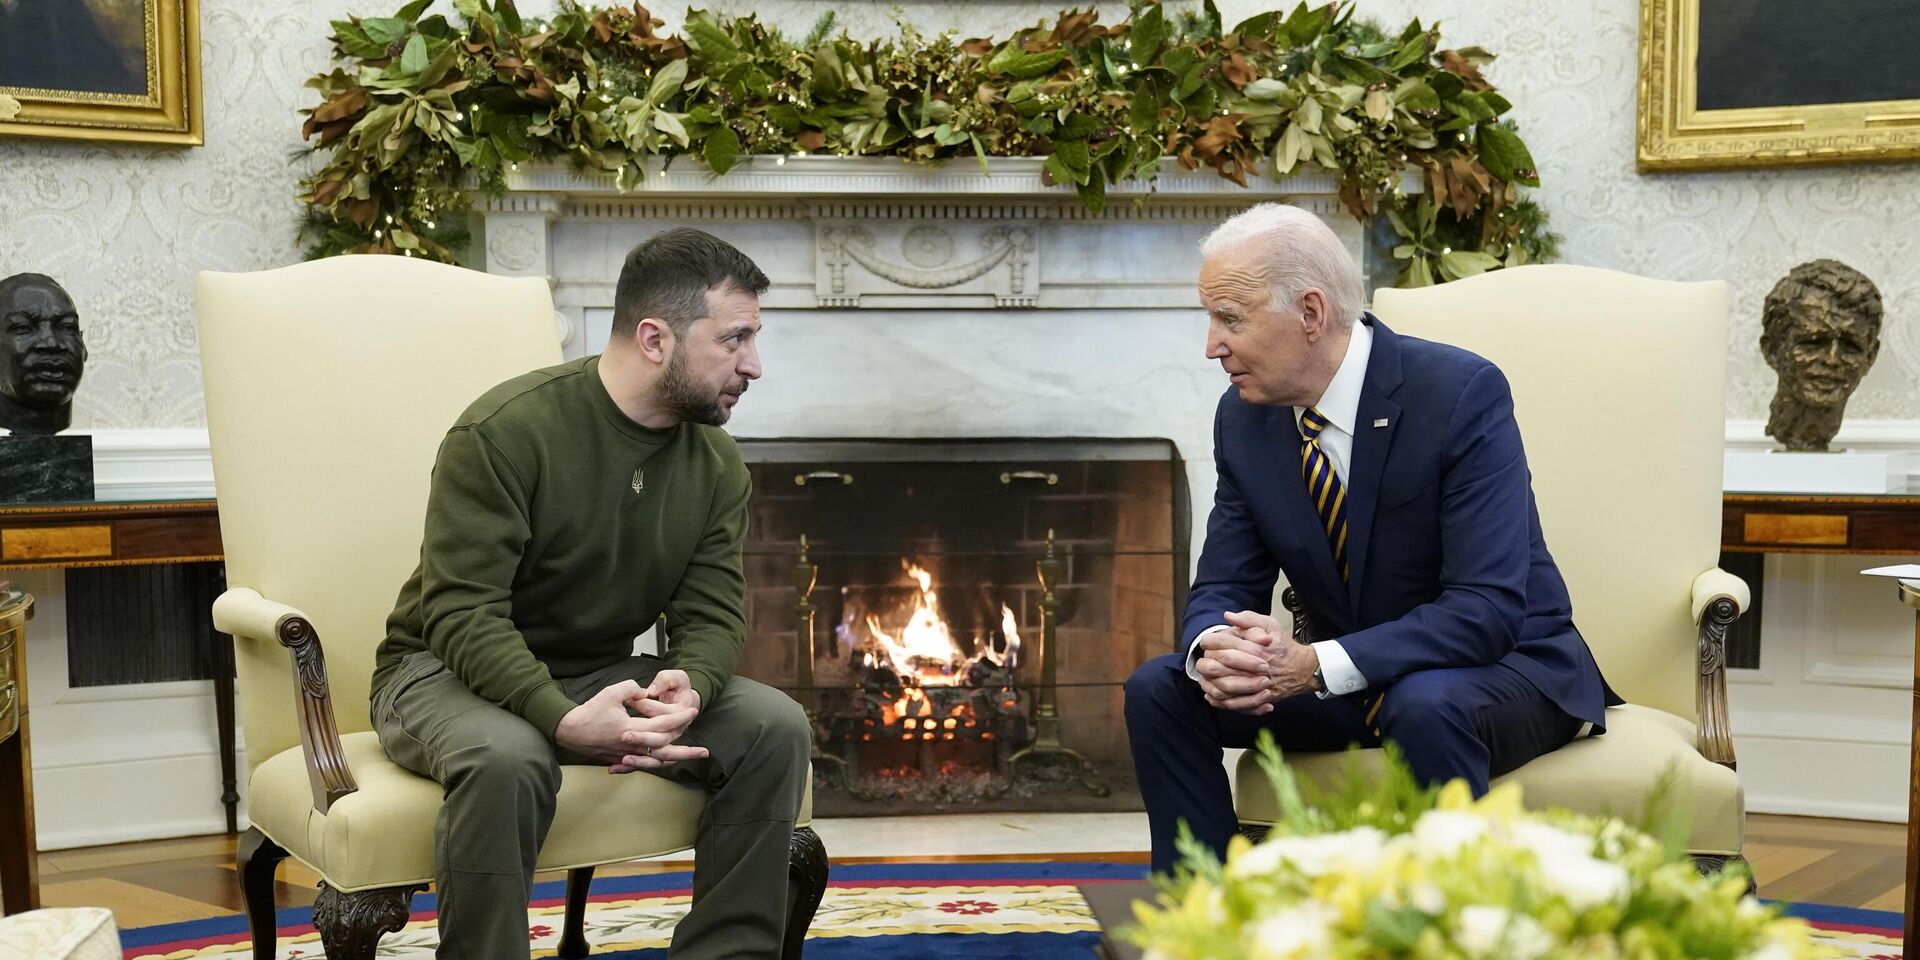 Президент США Джо Байден и президент Украины Владимир Зеленский во время встречи в Белом доме в Вашингтоне. 21 декабря 2022 года - ИноСМИ, 1920, 19.05.2023